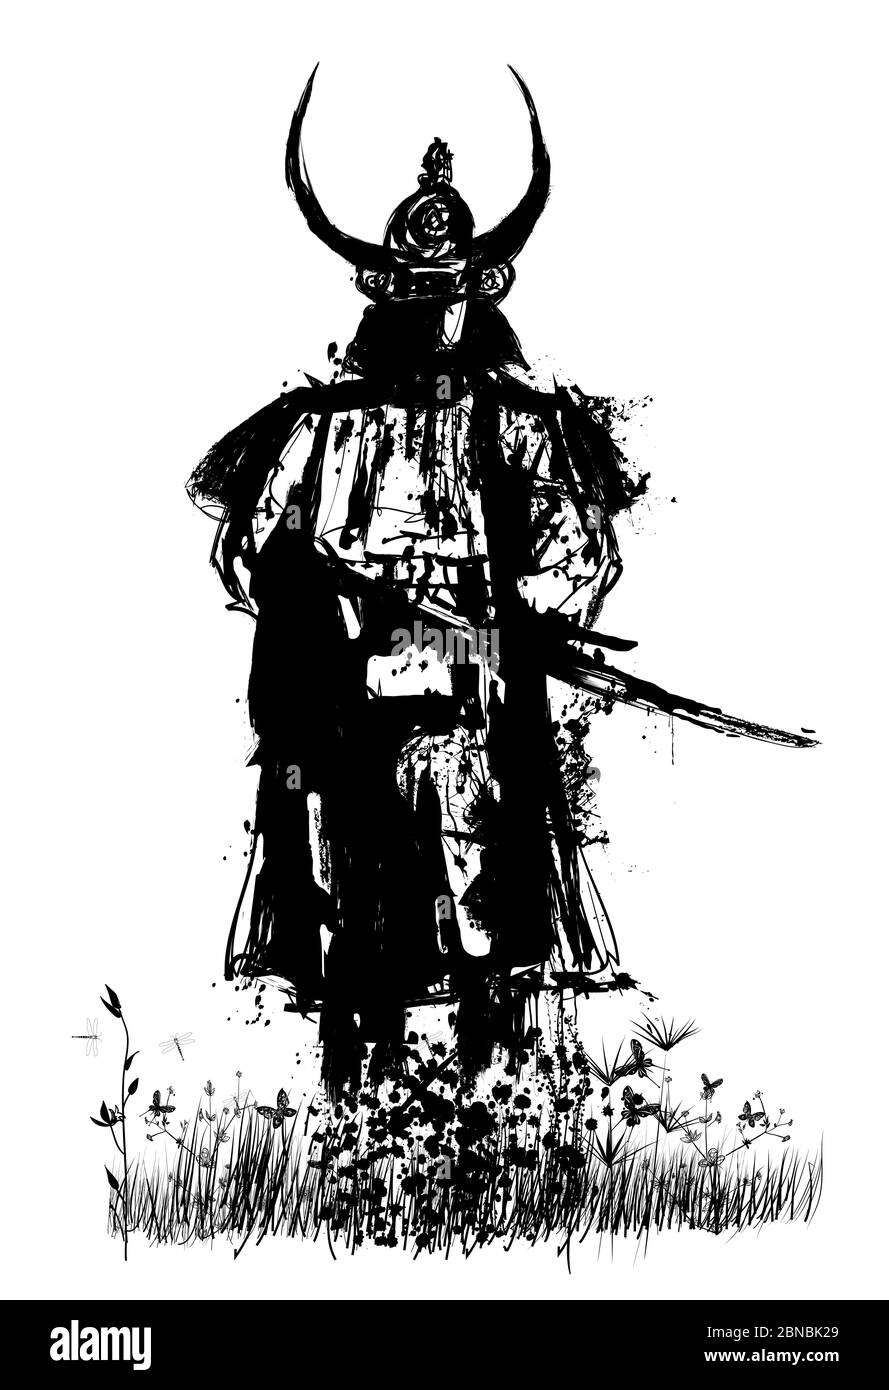 Samurai con spada - illustrazione vettoriale (ideale per la stampa su tessuto o carta, poster o carta da parati, decorazione di casa) Illustrazione Vettoriale